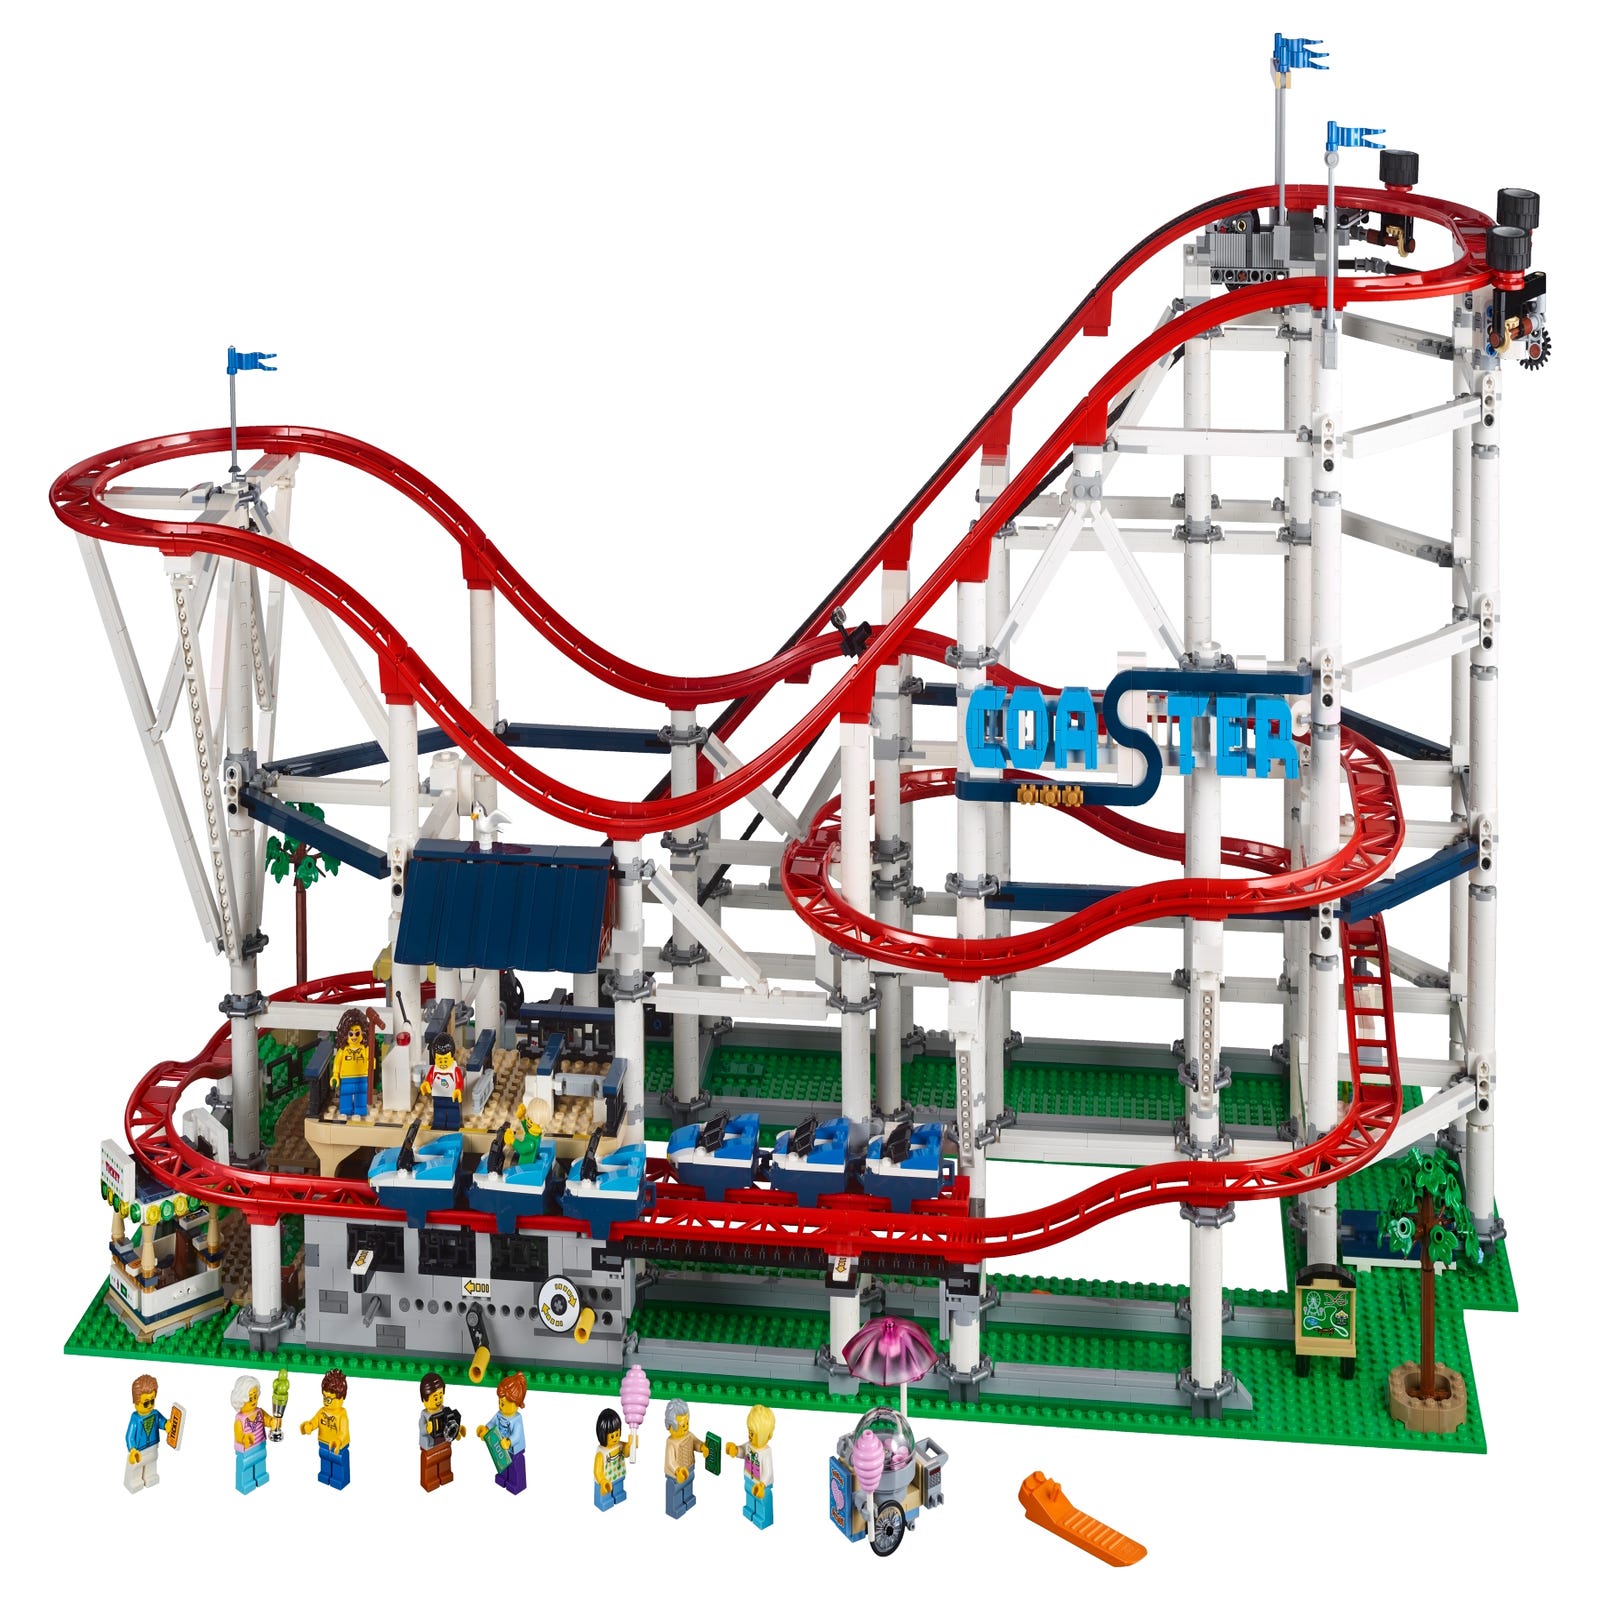 絶叫ローラーコースター 10261 クリエイターエキスパート Lego Com Jp